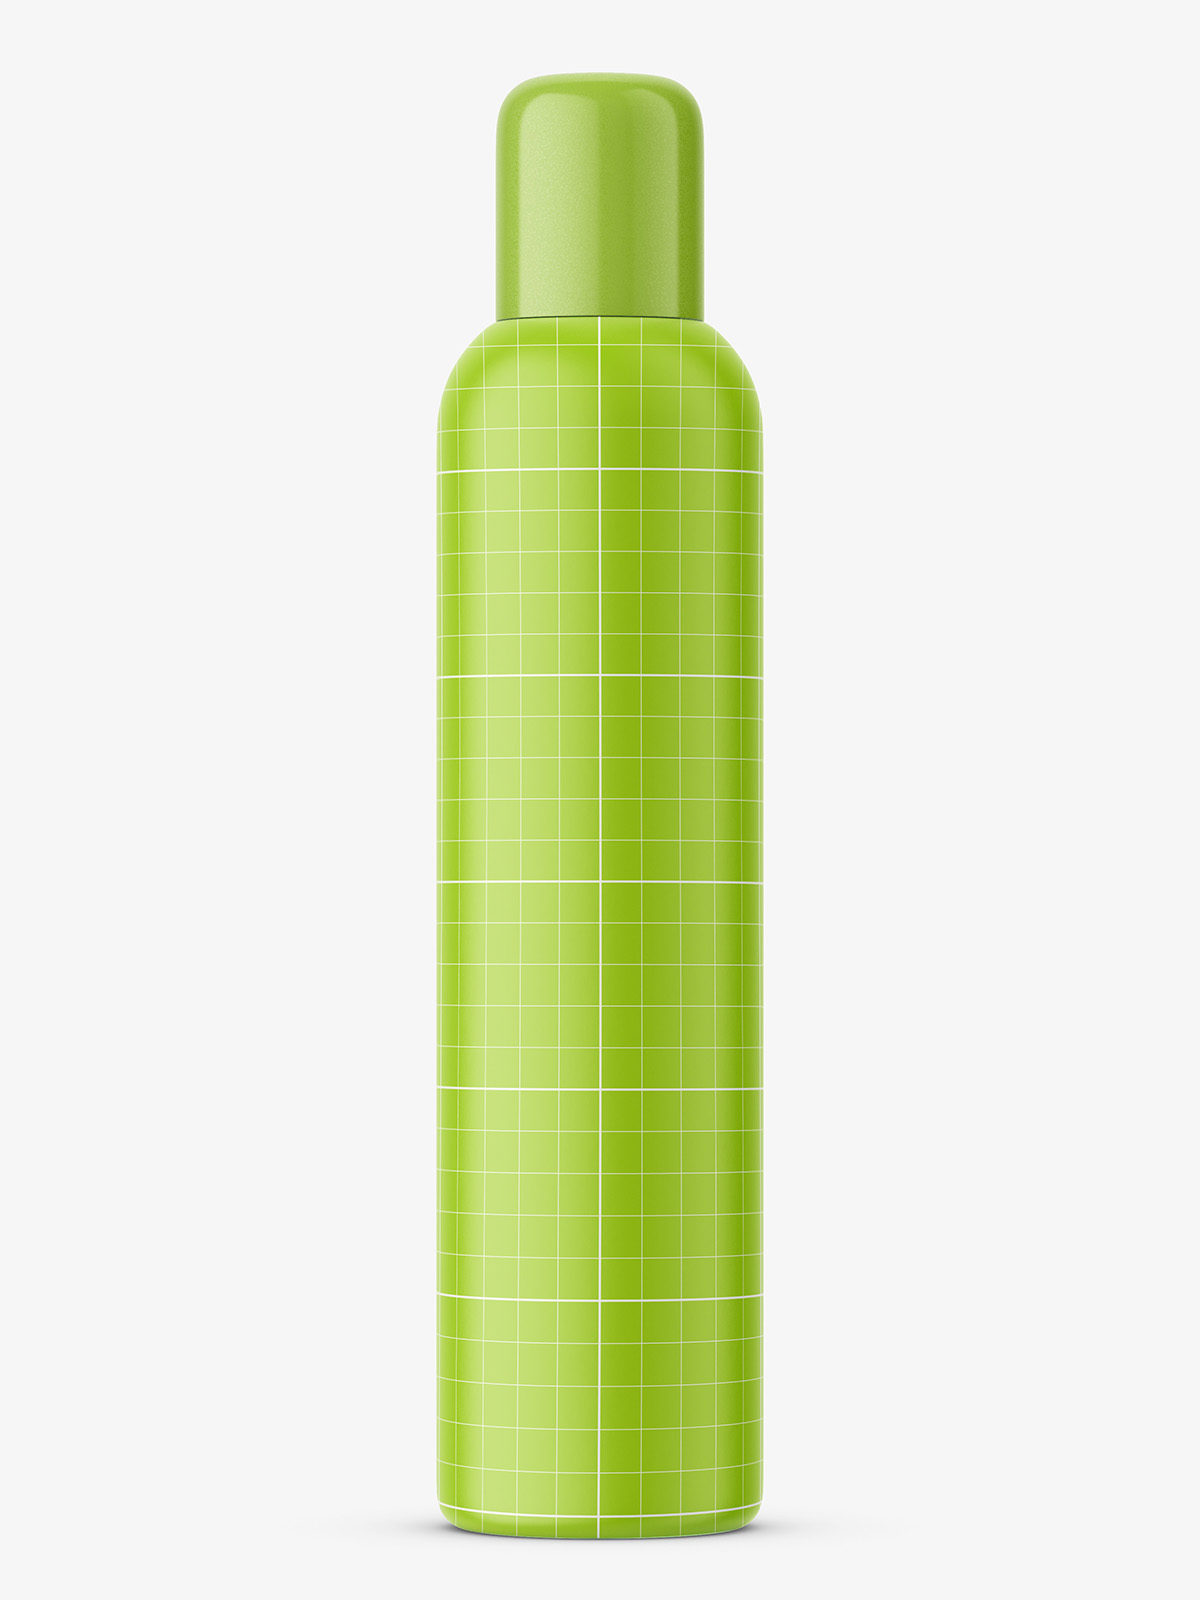 Download Transparent oil bottle mockup - Smarty Mockups